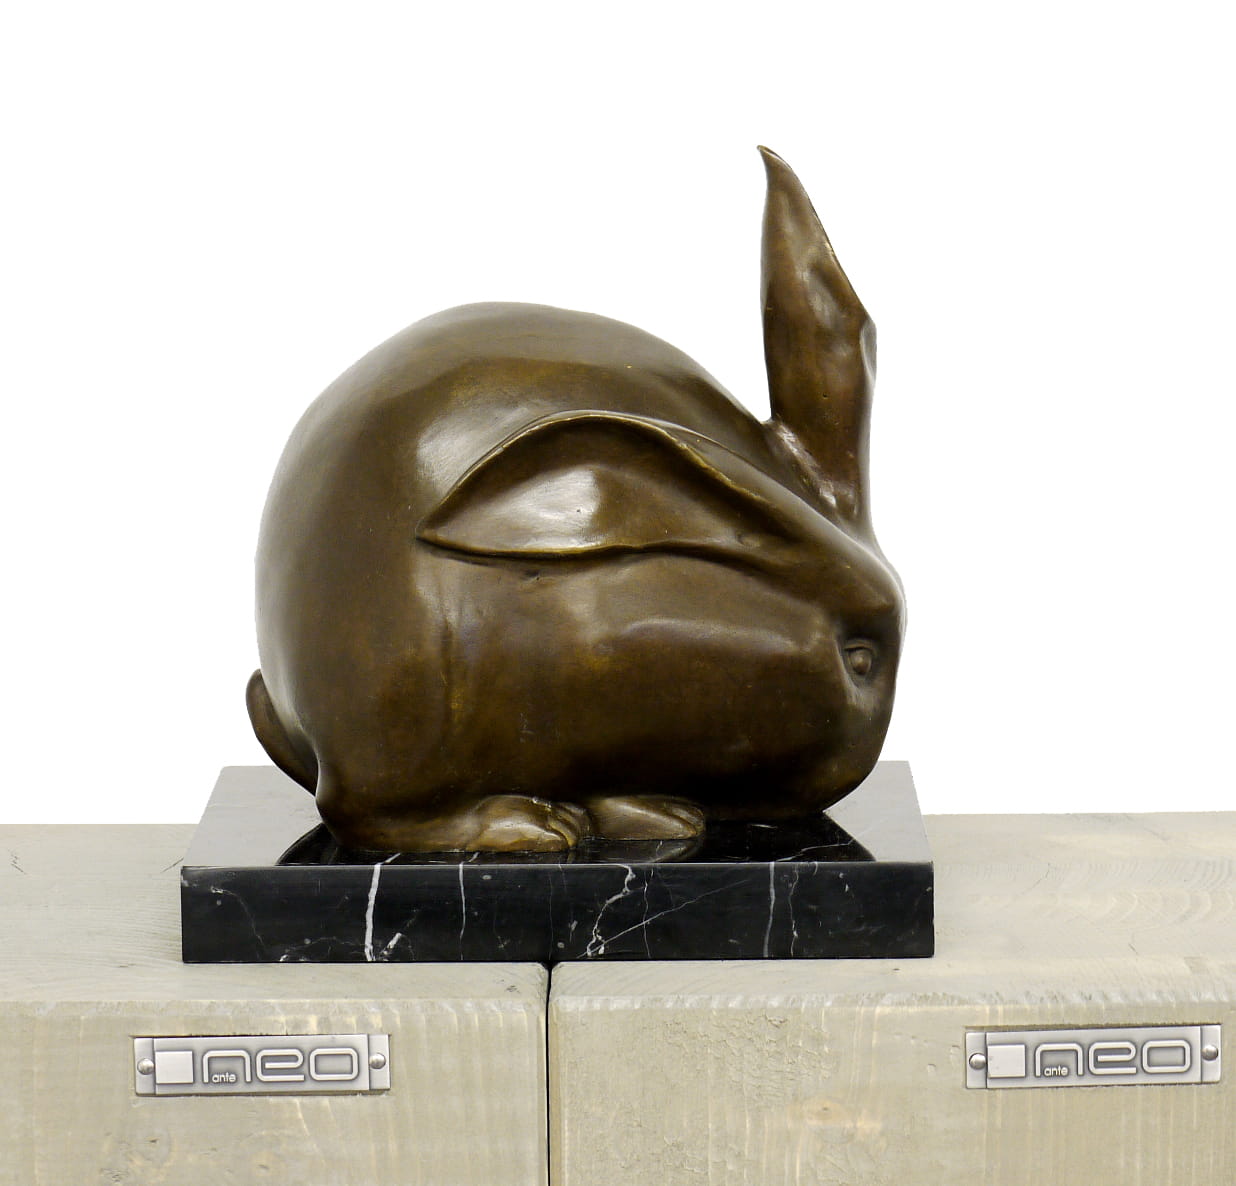 rabbit modern art